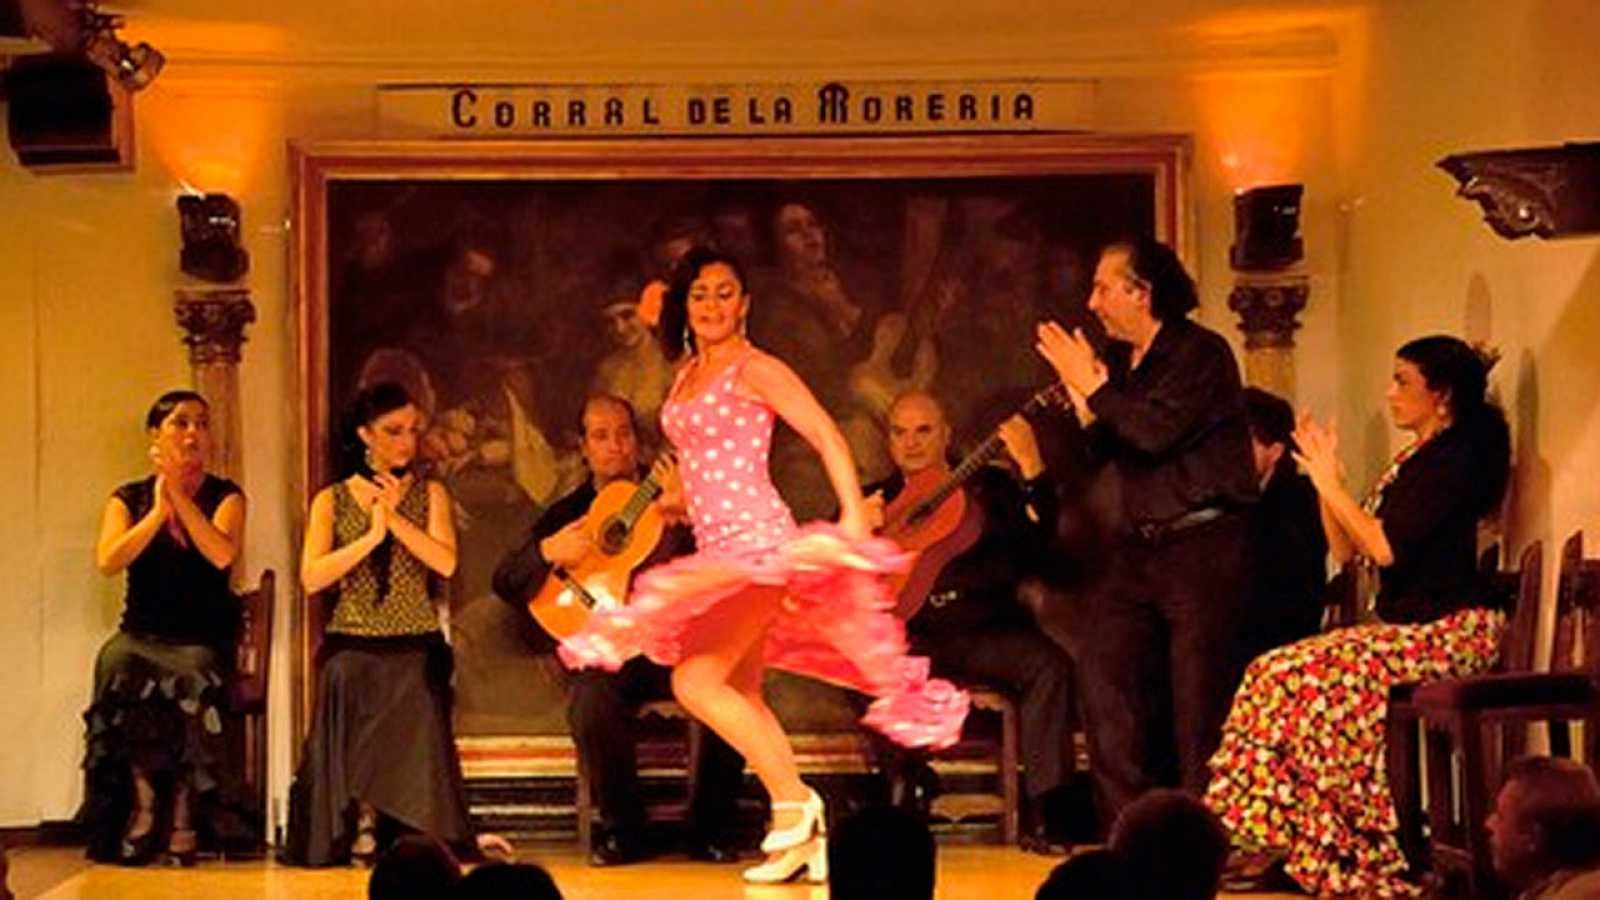 El Corral de la Morería, el tablao flamenco más famoso, reabrirá sus puertas el 20 de mayo